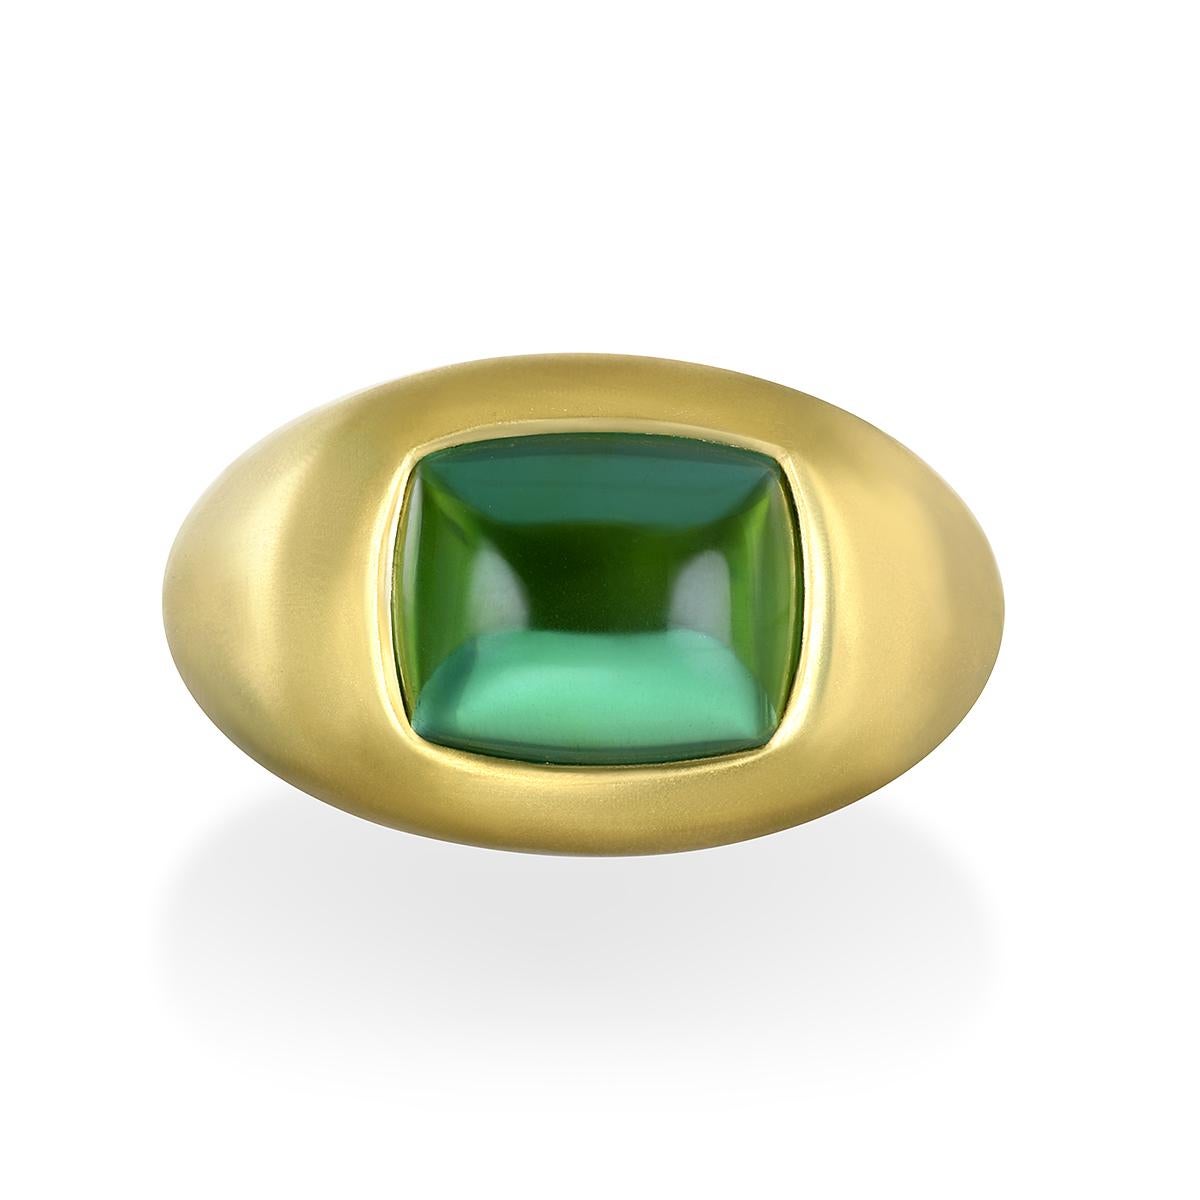 Der 18 Karat Gold Cushion Green Tourmaline Cabochon Ring von Faye Kim mit seinem faszinierenden grünen Farbton und seiner Kuppelfassung ist wunderschön mattiert und kann zu jedem Anlass getragen werden. 

Grüner Turmalin Cabachon 5,78 Karat
Cabochon